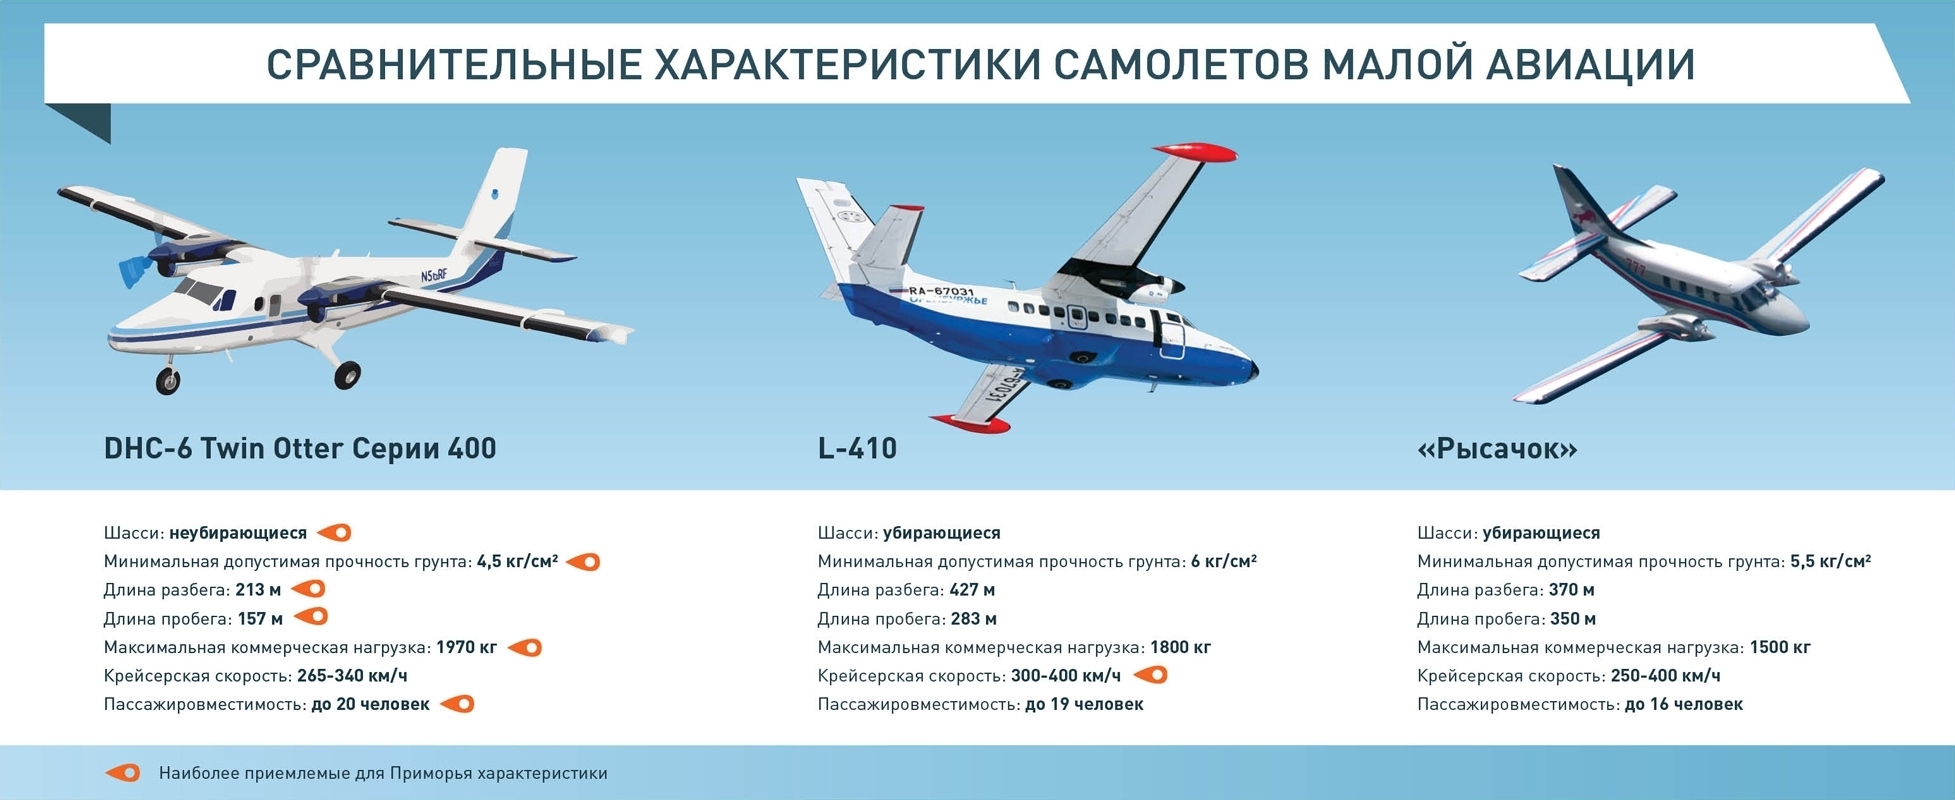 Дальность полета легкомоторного самолета. DHC-6 Twin Otter самолёт характеристики. Самолёт Рысачок технические характеристики. Сравнительная характеристика самолетов. Характеристики пассажирских самолетов.